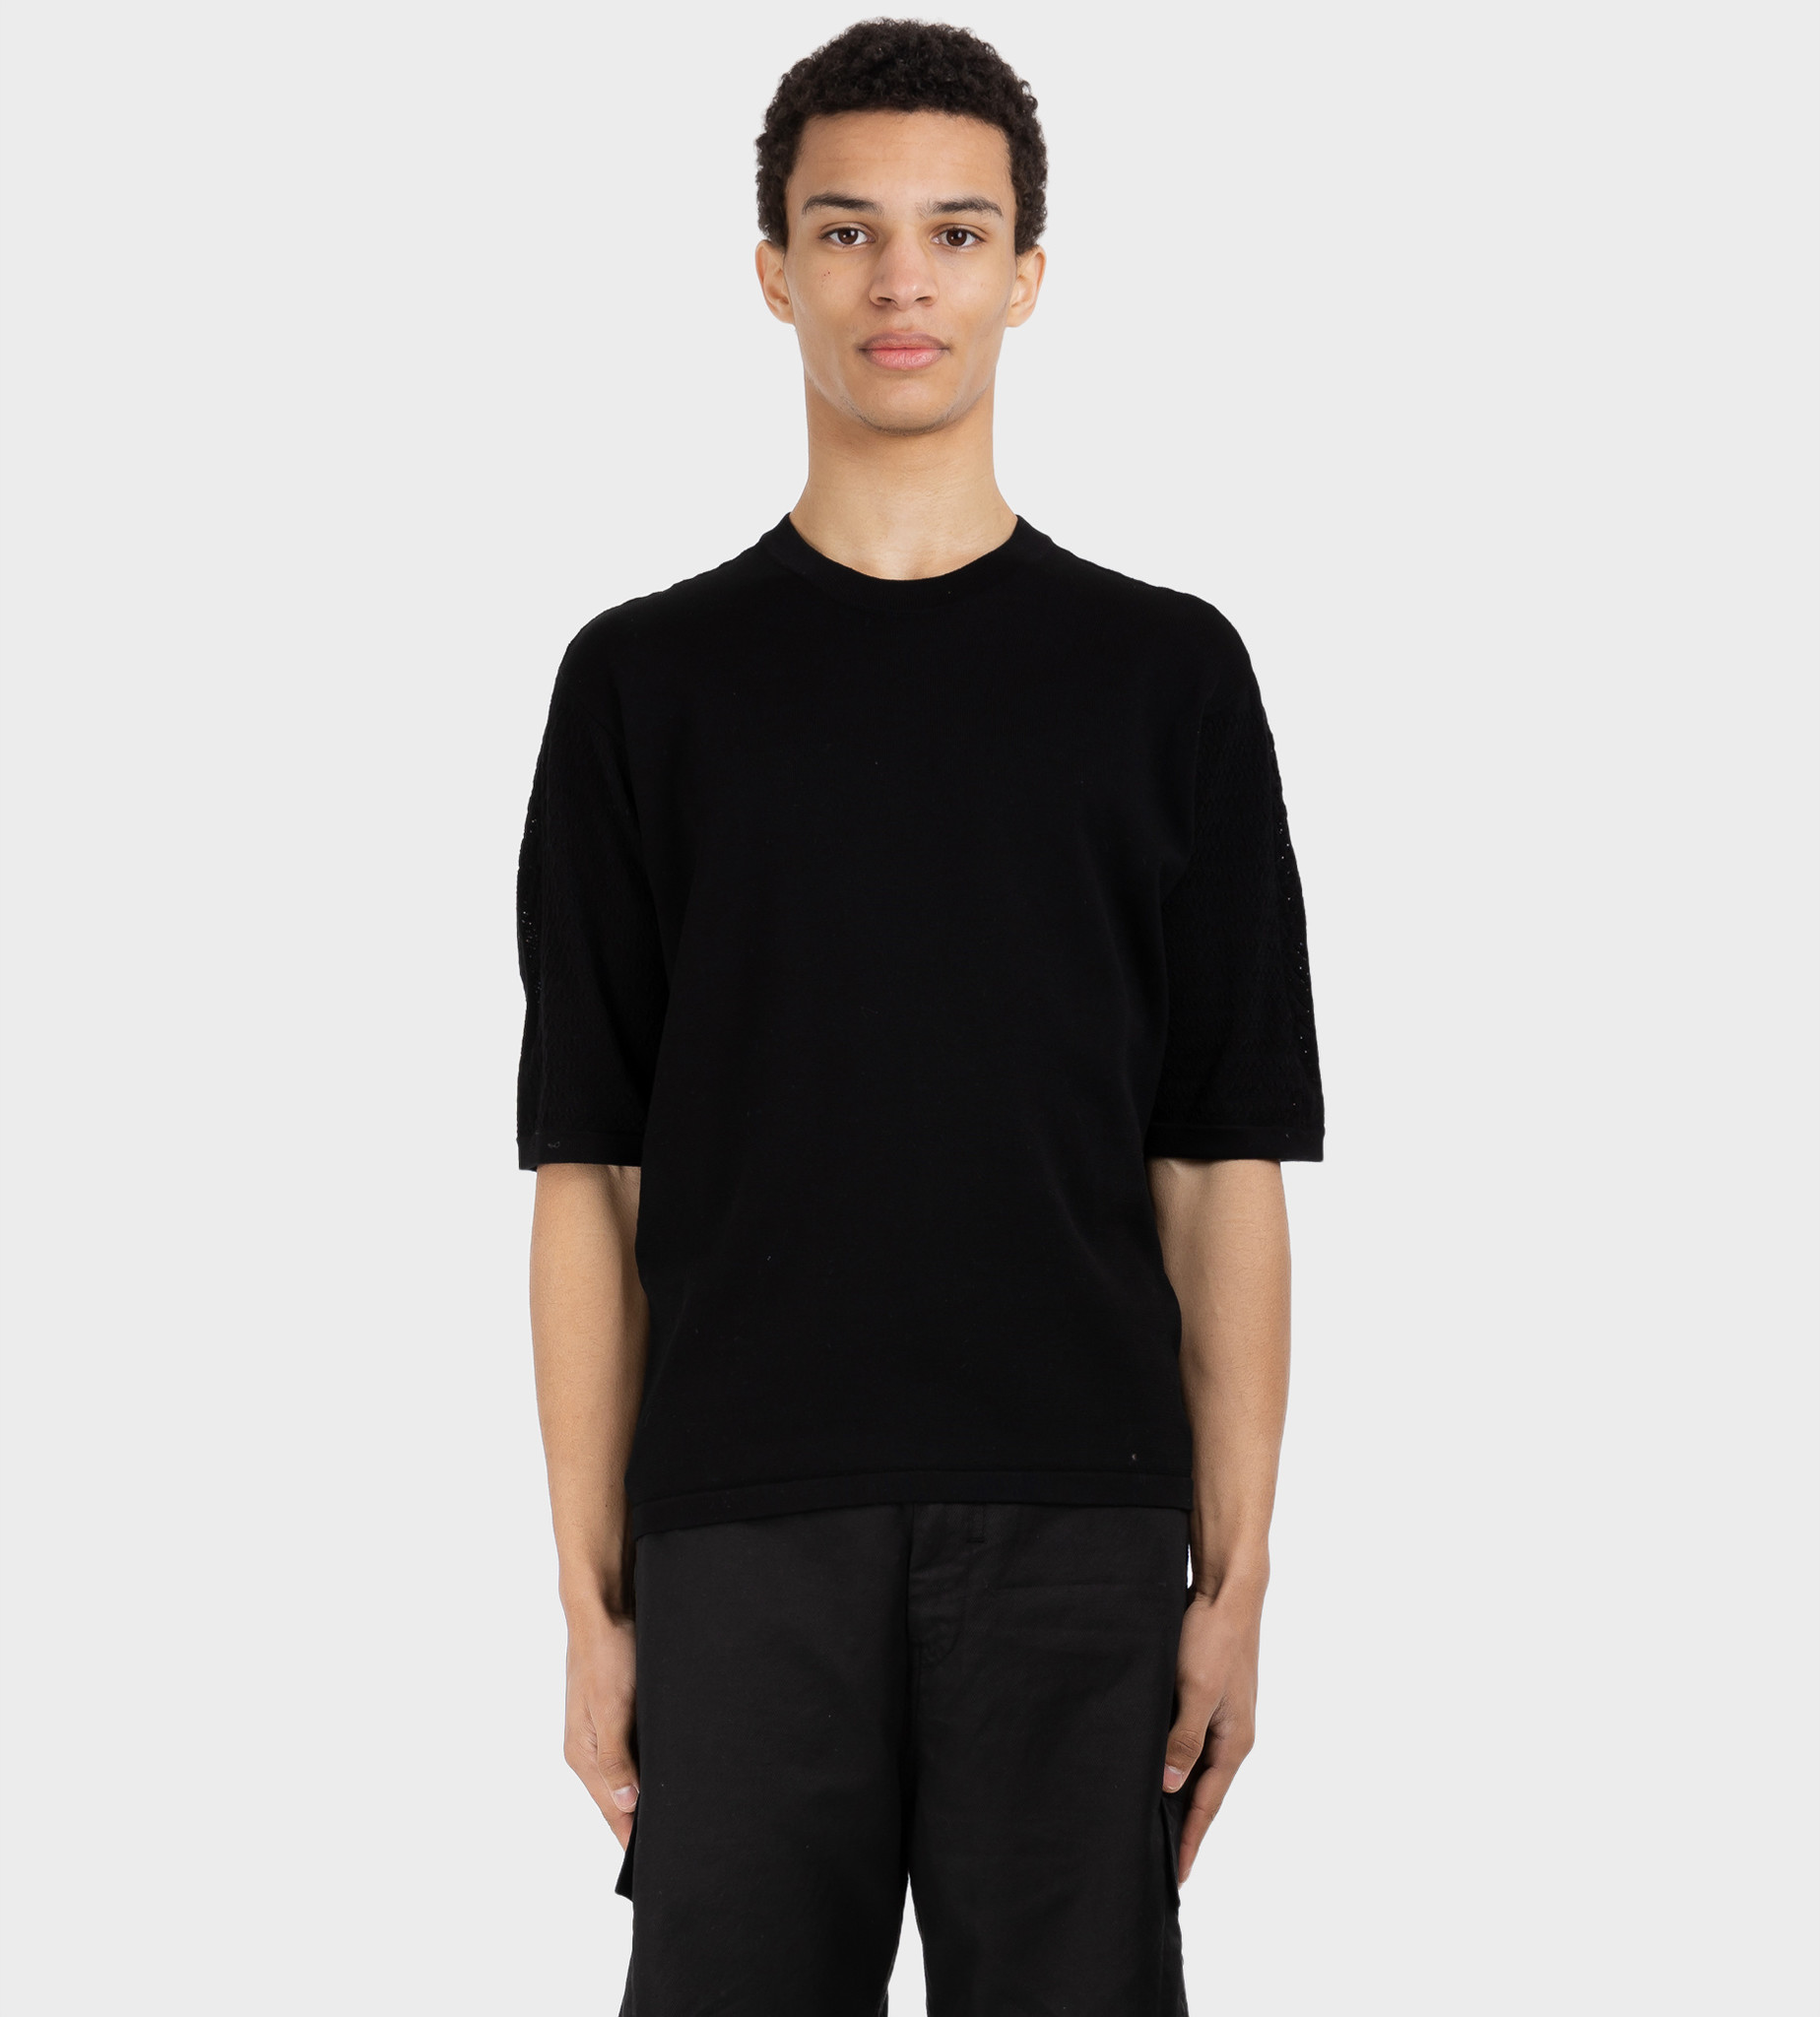 STONE ISLAND SHADOW PROJECT Aran S/S Knit T-Shirt Black